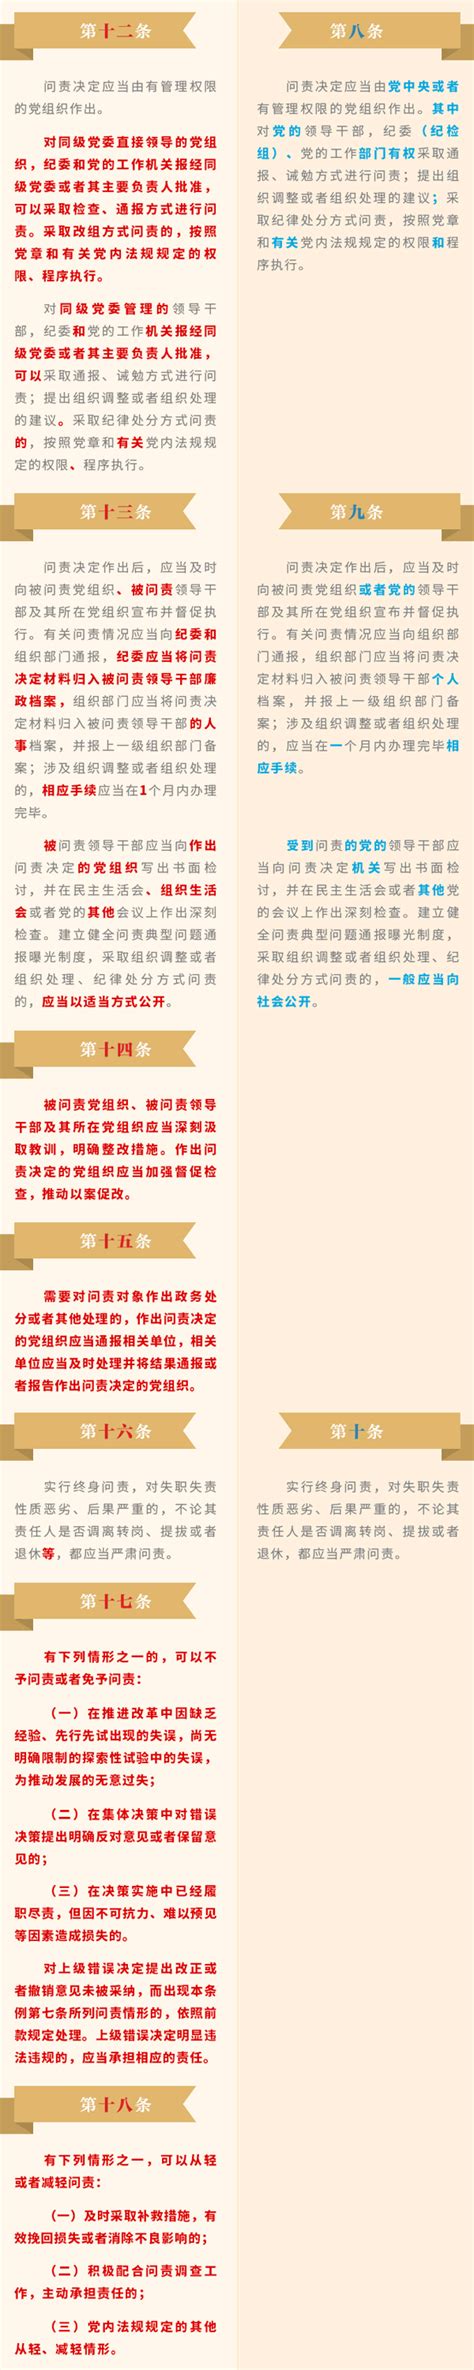 《中国共产党问责条例》修订前后对照表-中工新闻-中工网